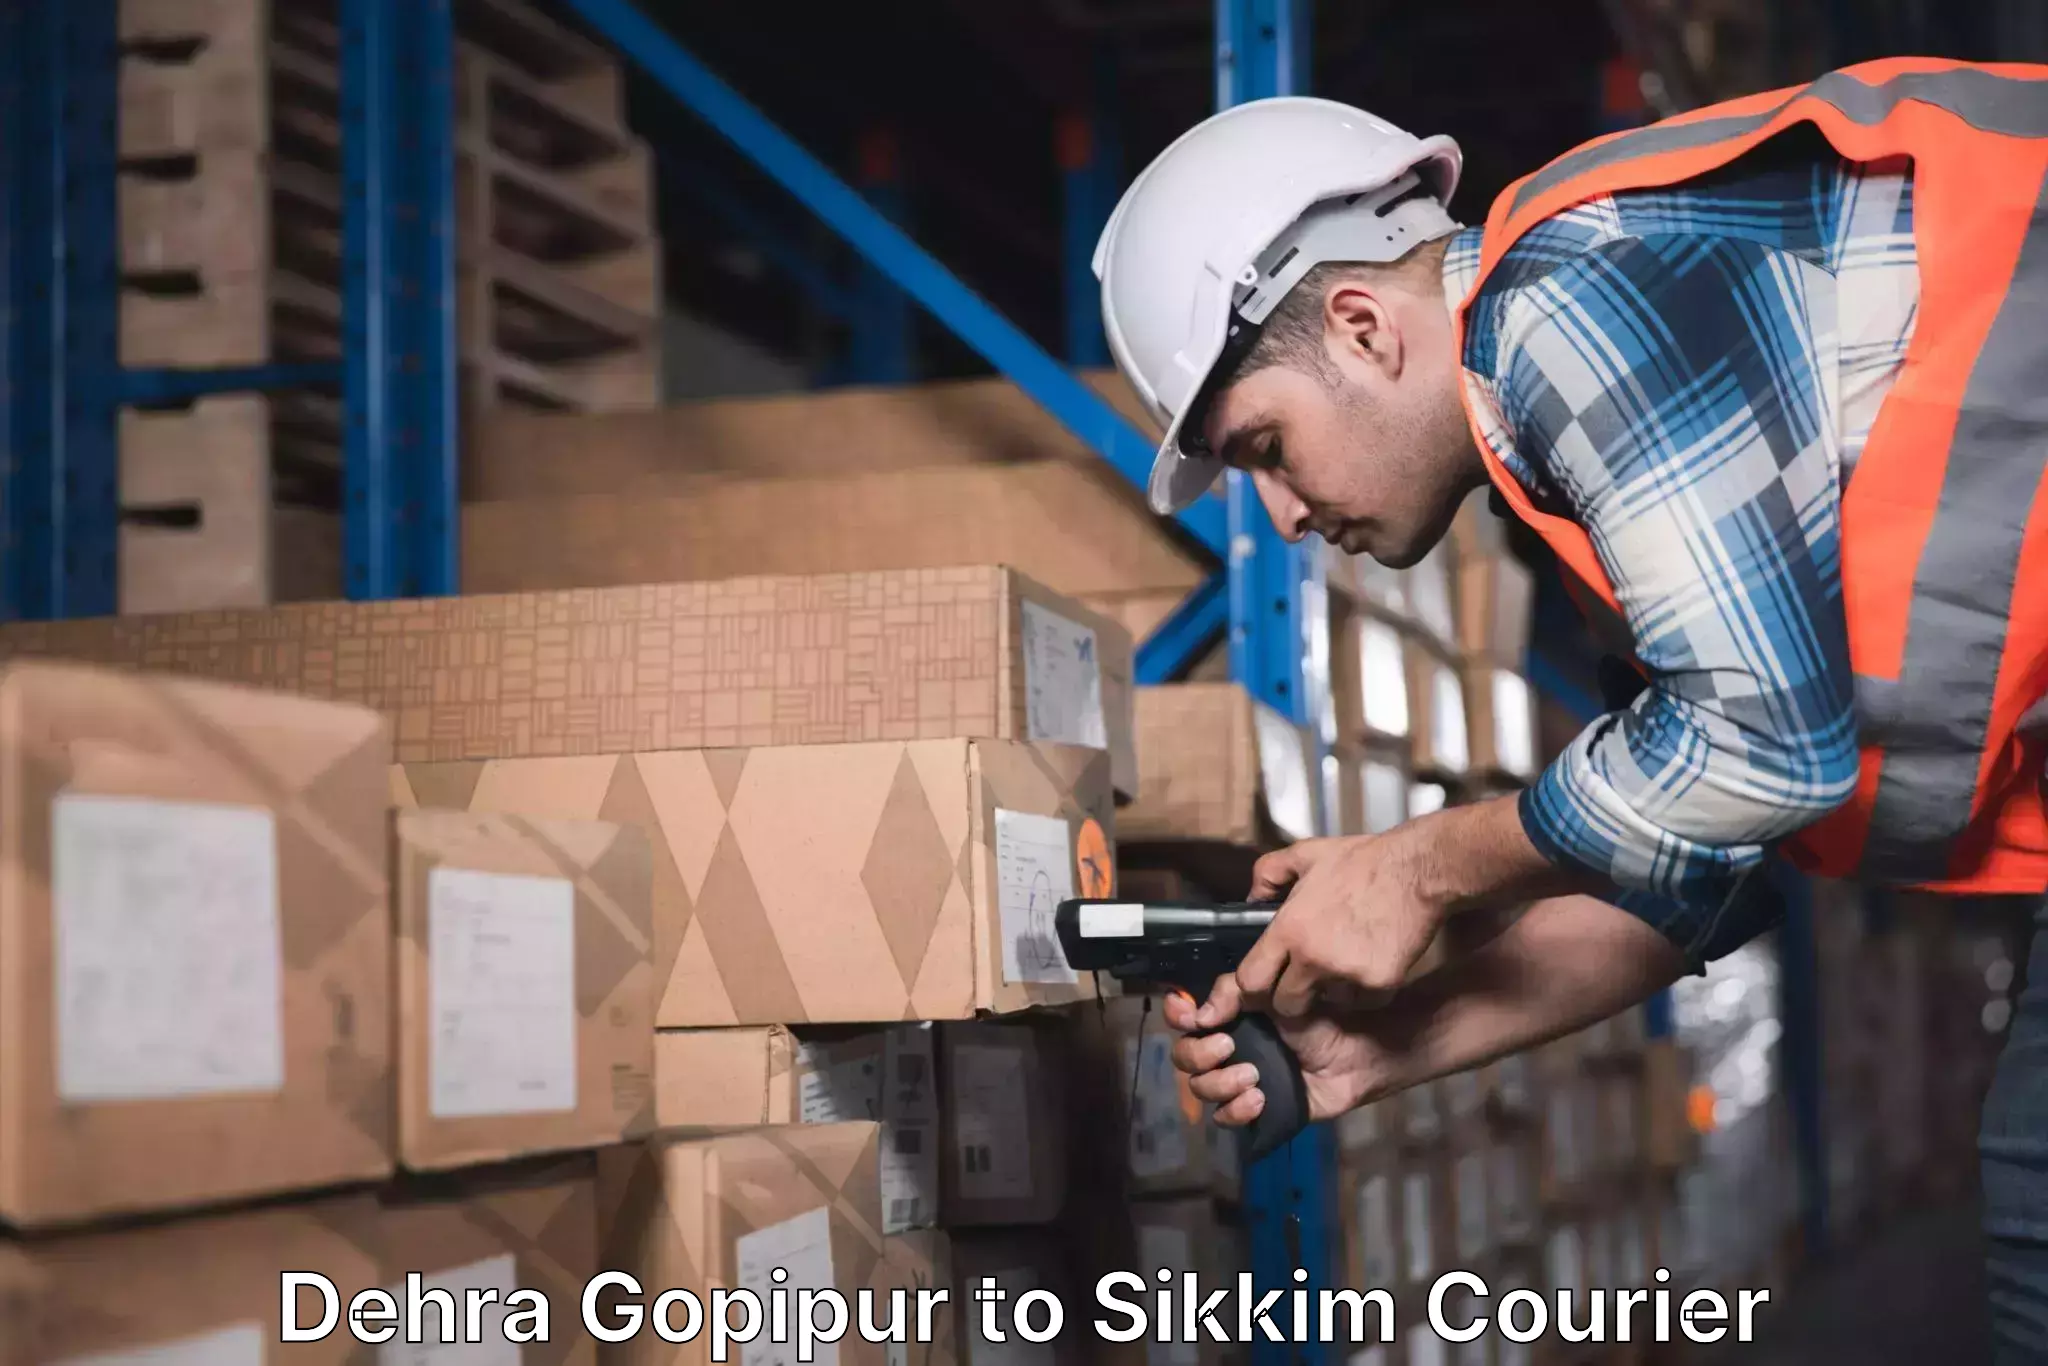 Efficient freight service Dehra Gopipur to Sikkim